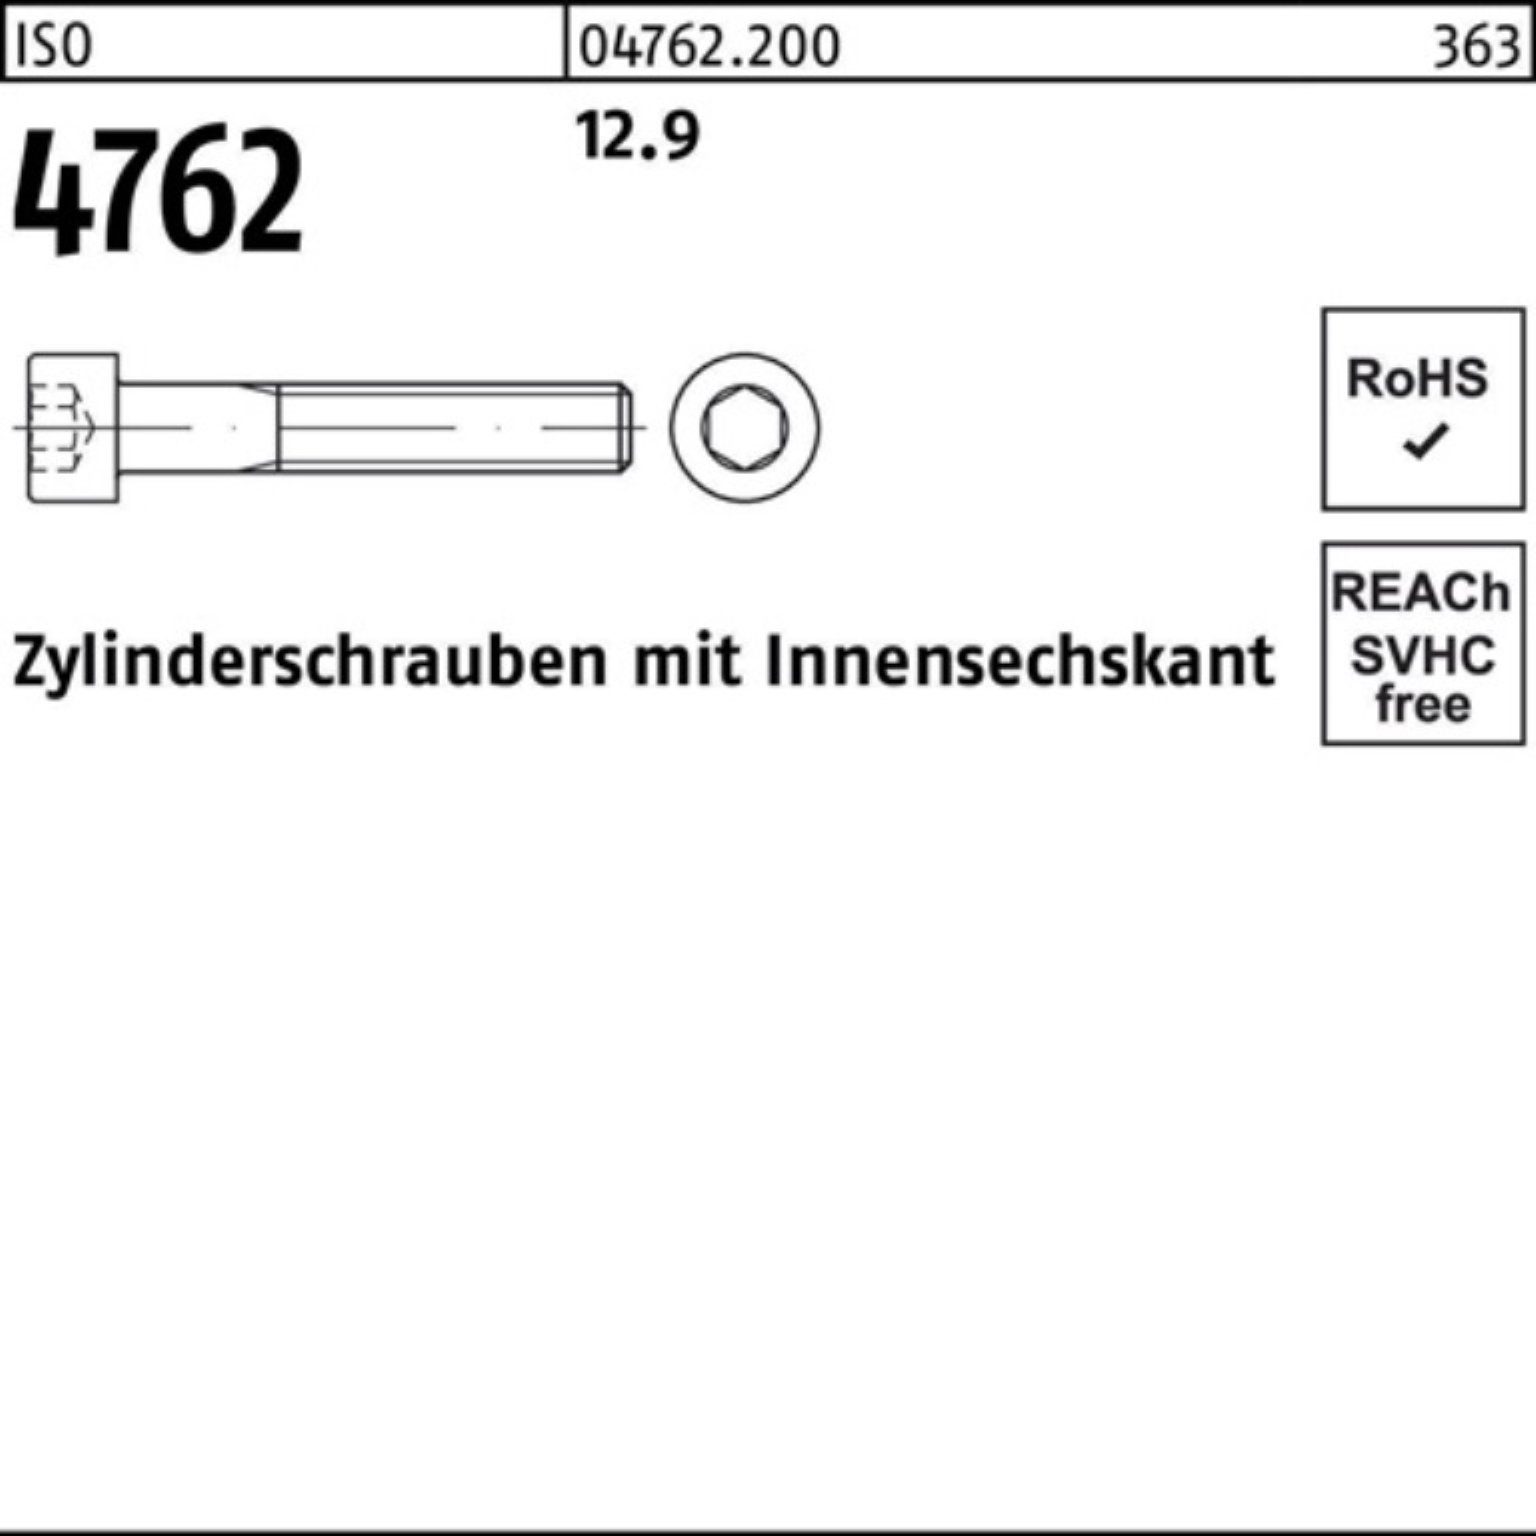 ISO 500er M3x 4762 Reyher Zylinderschraube Innen-6kt Pack 500 Stück 14 Zylinderschraube 12.9